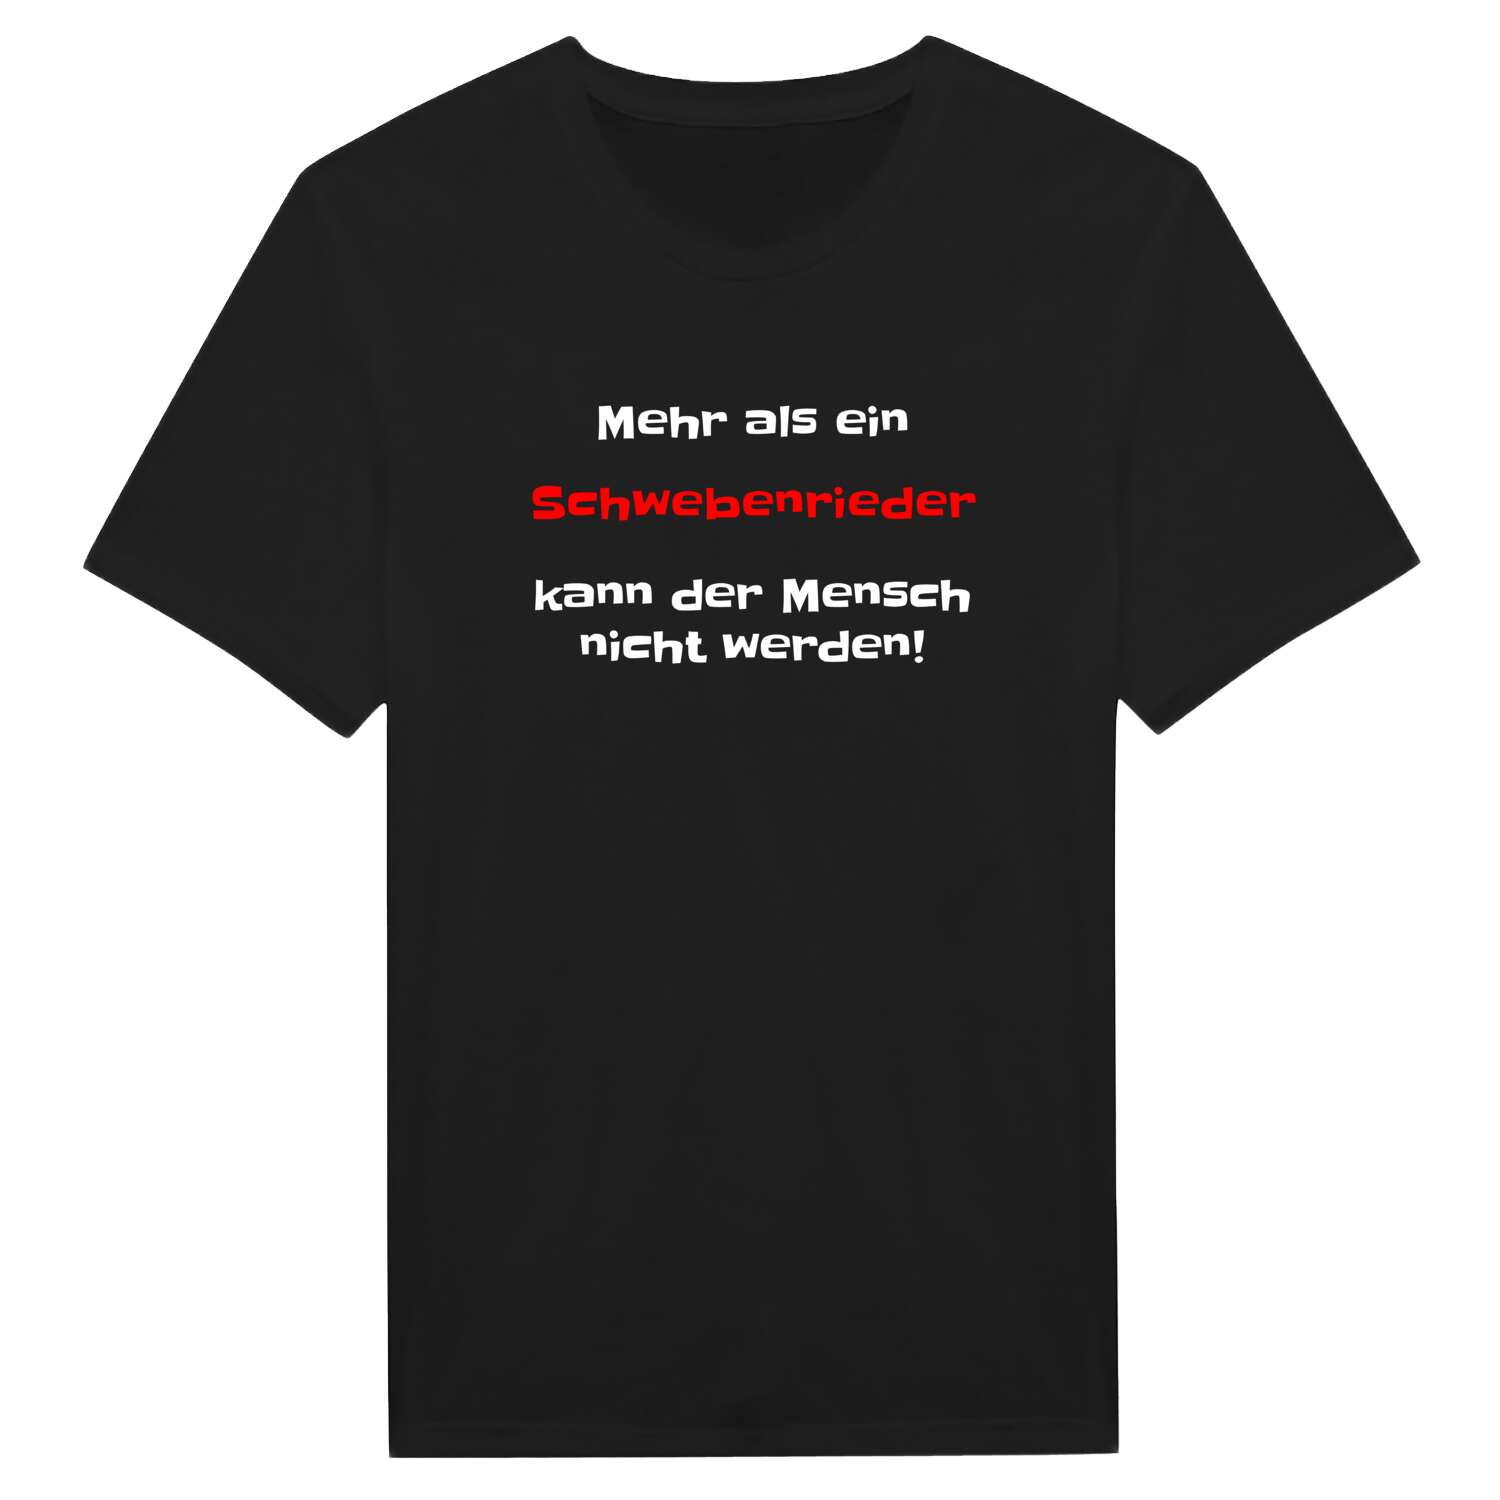 Schwebenried T-Shirt »Mehr als ein«